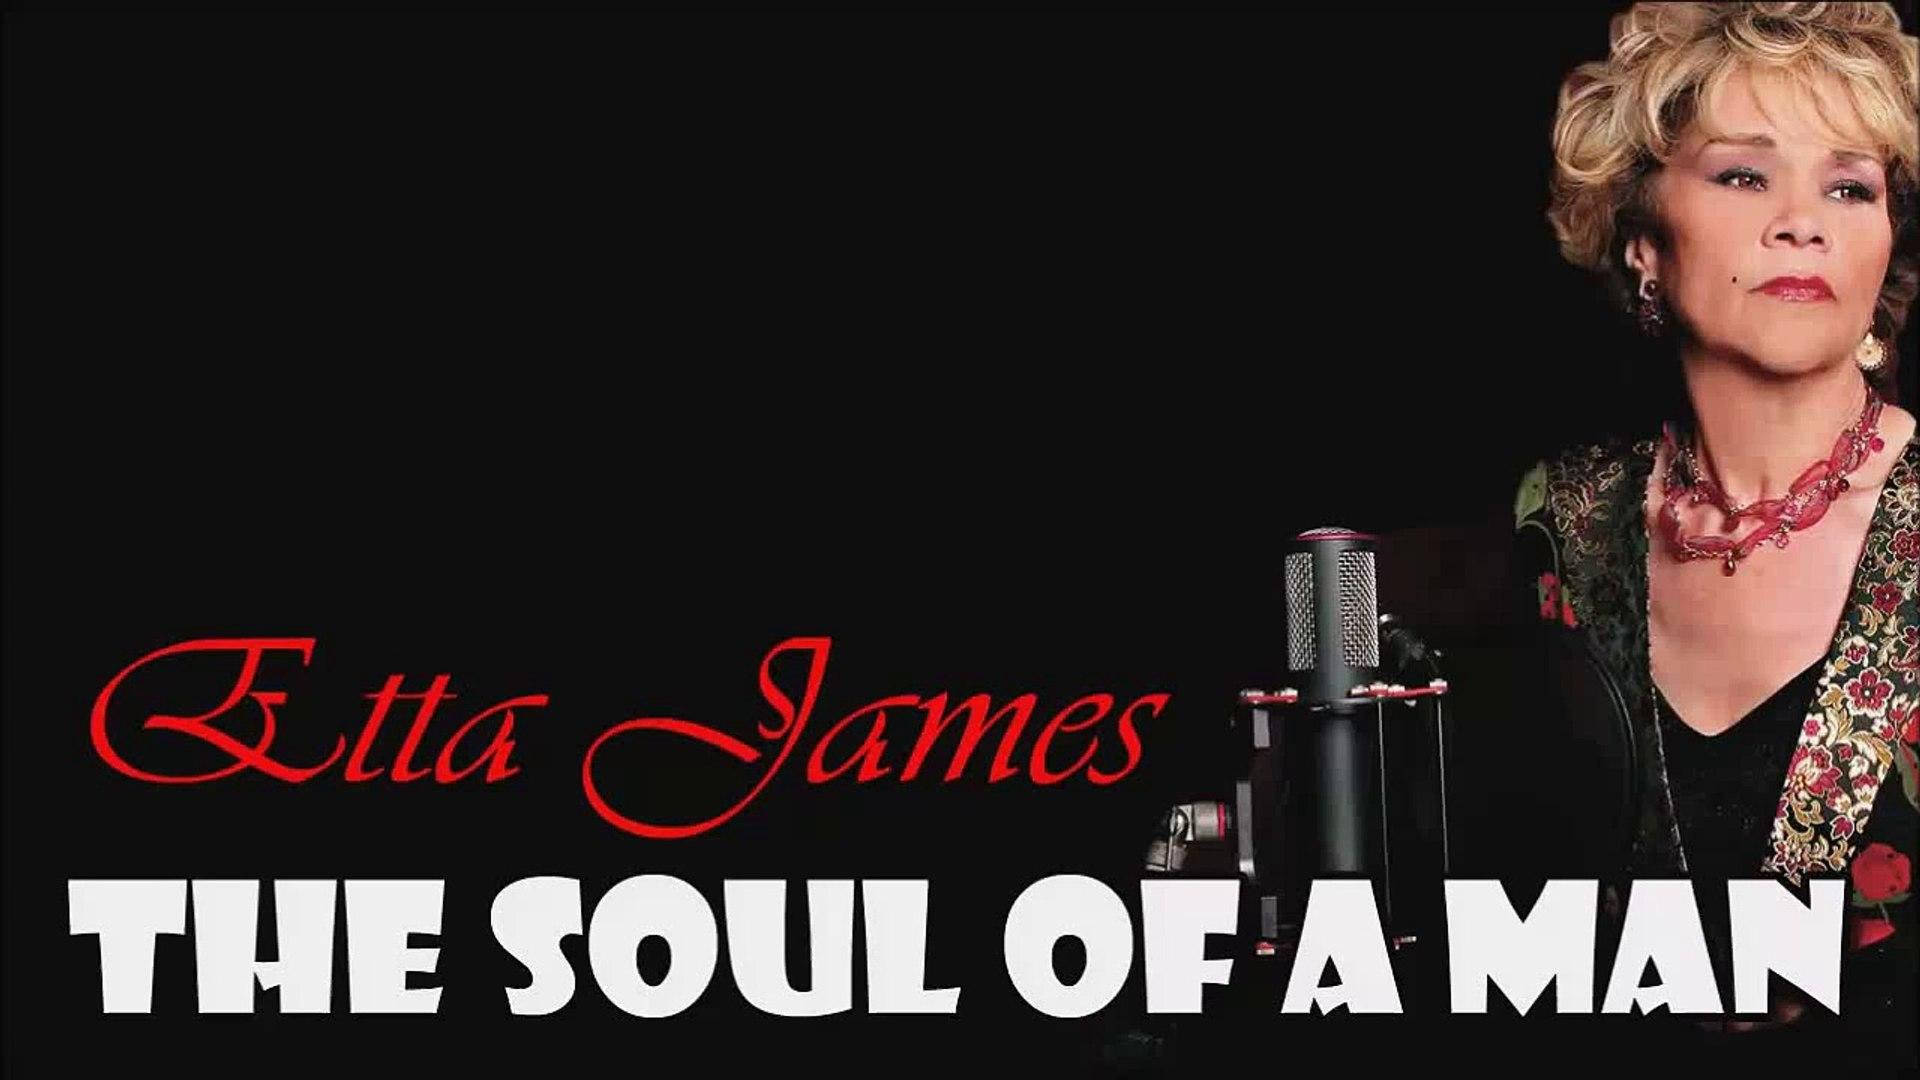 Etta James The Soul Of A Man leveres som baggrundsbillede Wallpaper